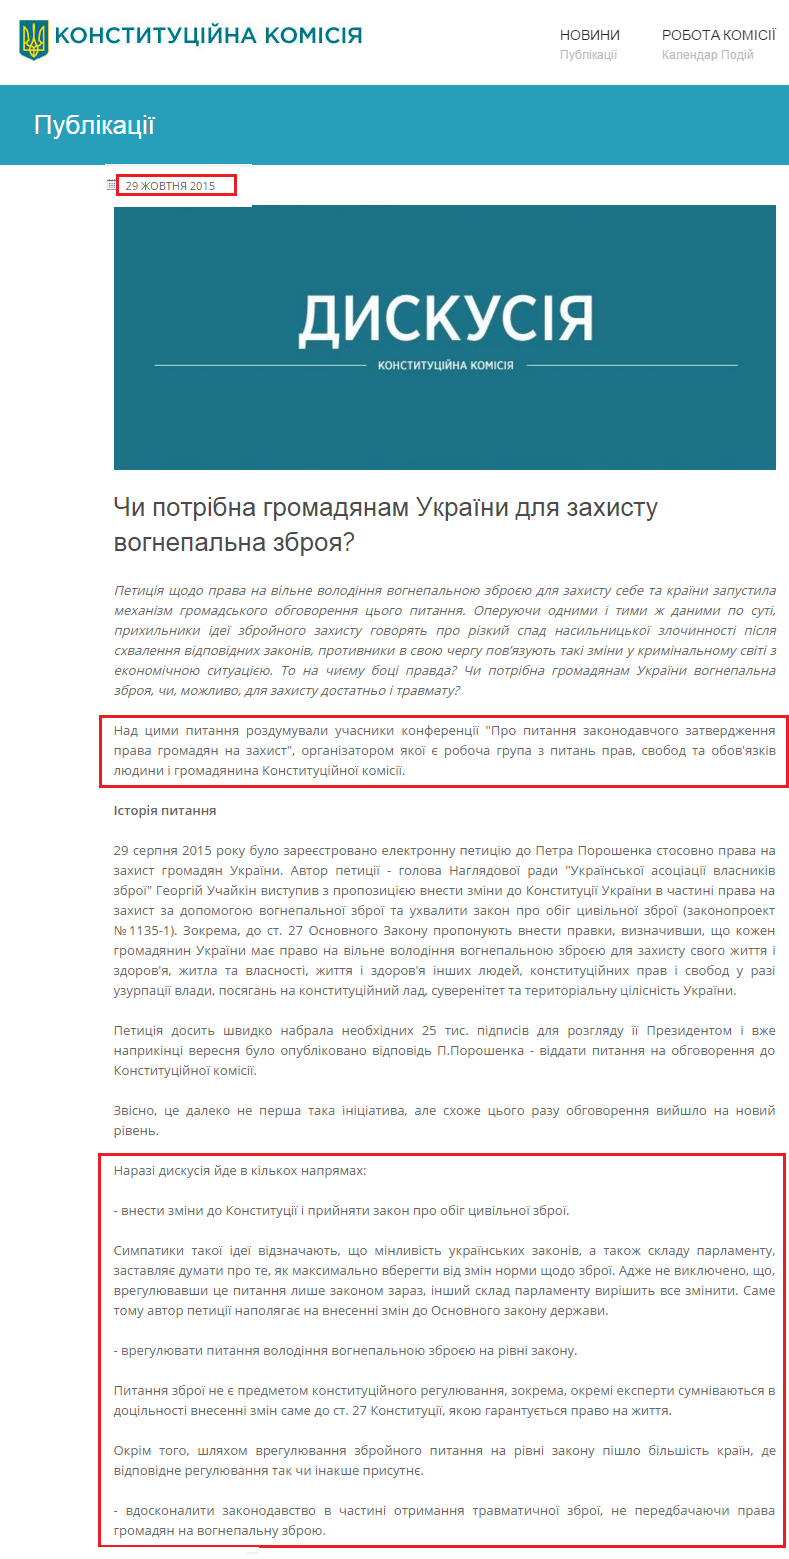 http://constitution.gov.ua/publications/item/id/89